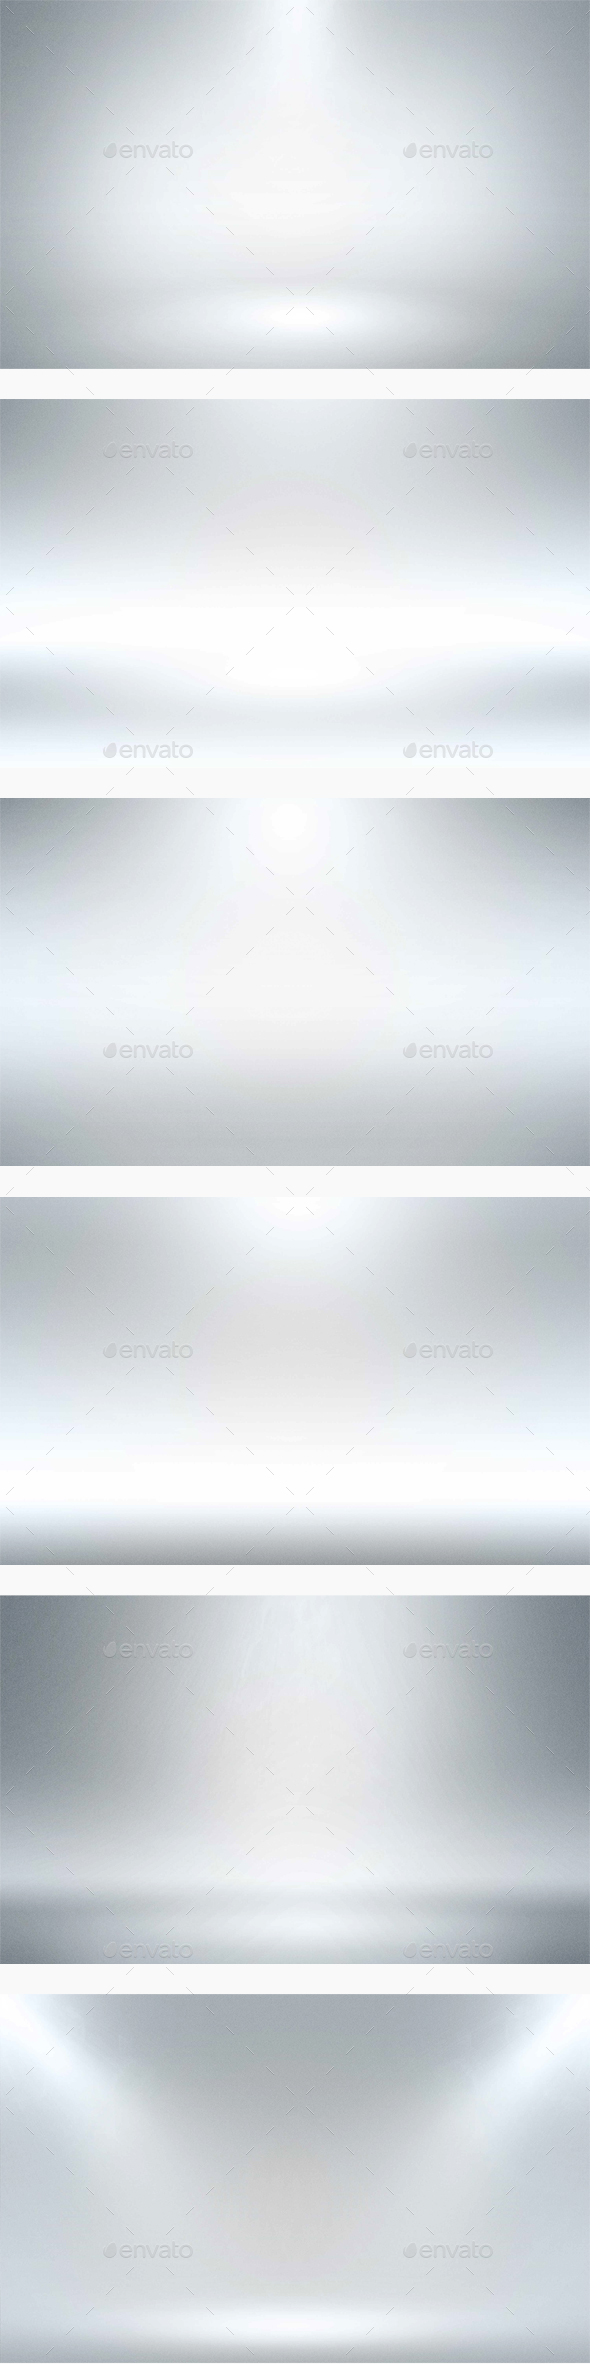 Infinite White Floor Spotlight Backgrounds